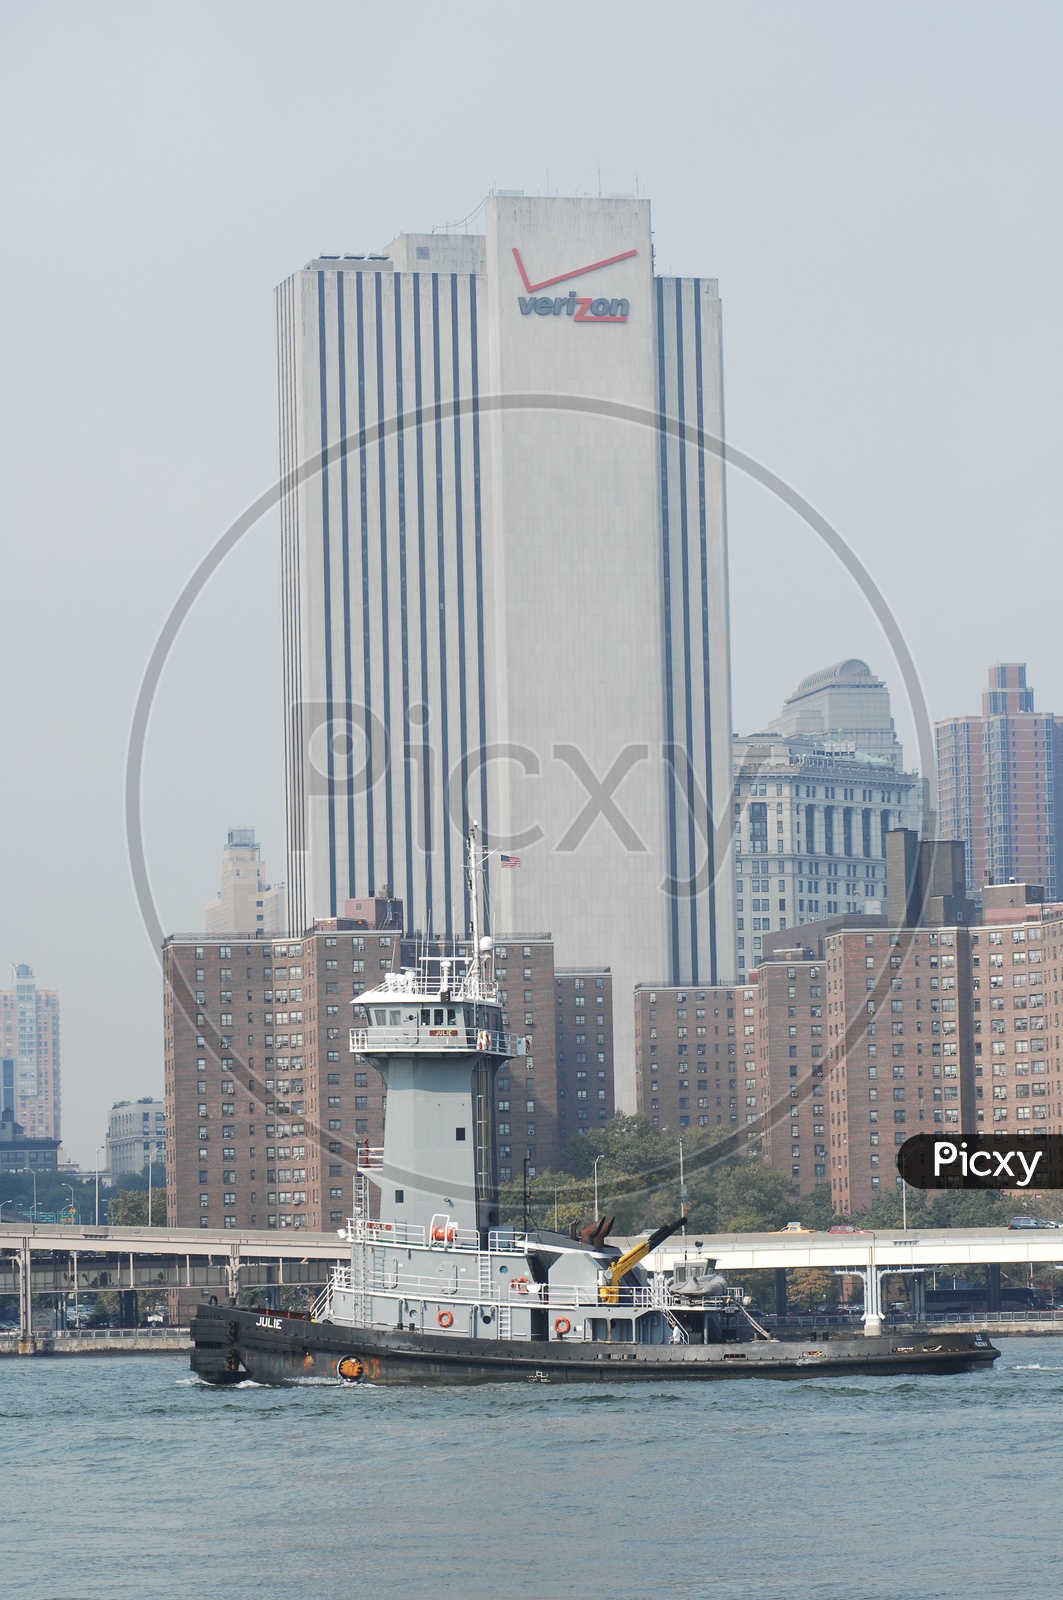 Tug boat on the sea with Verizon skyscraper in background